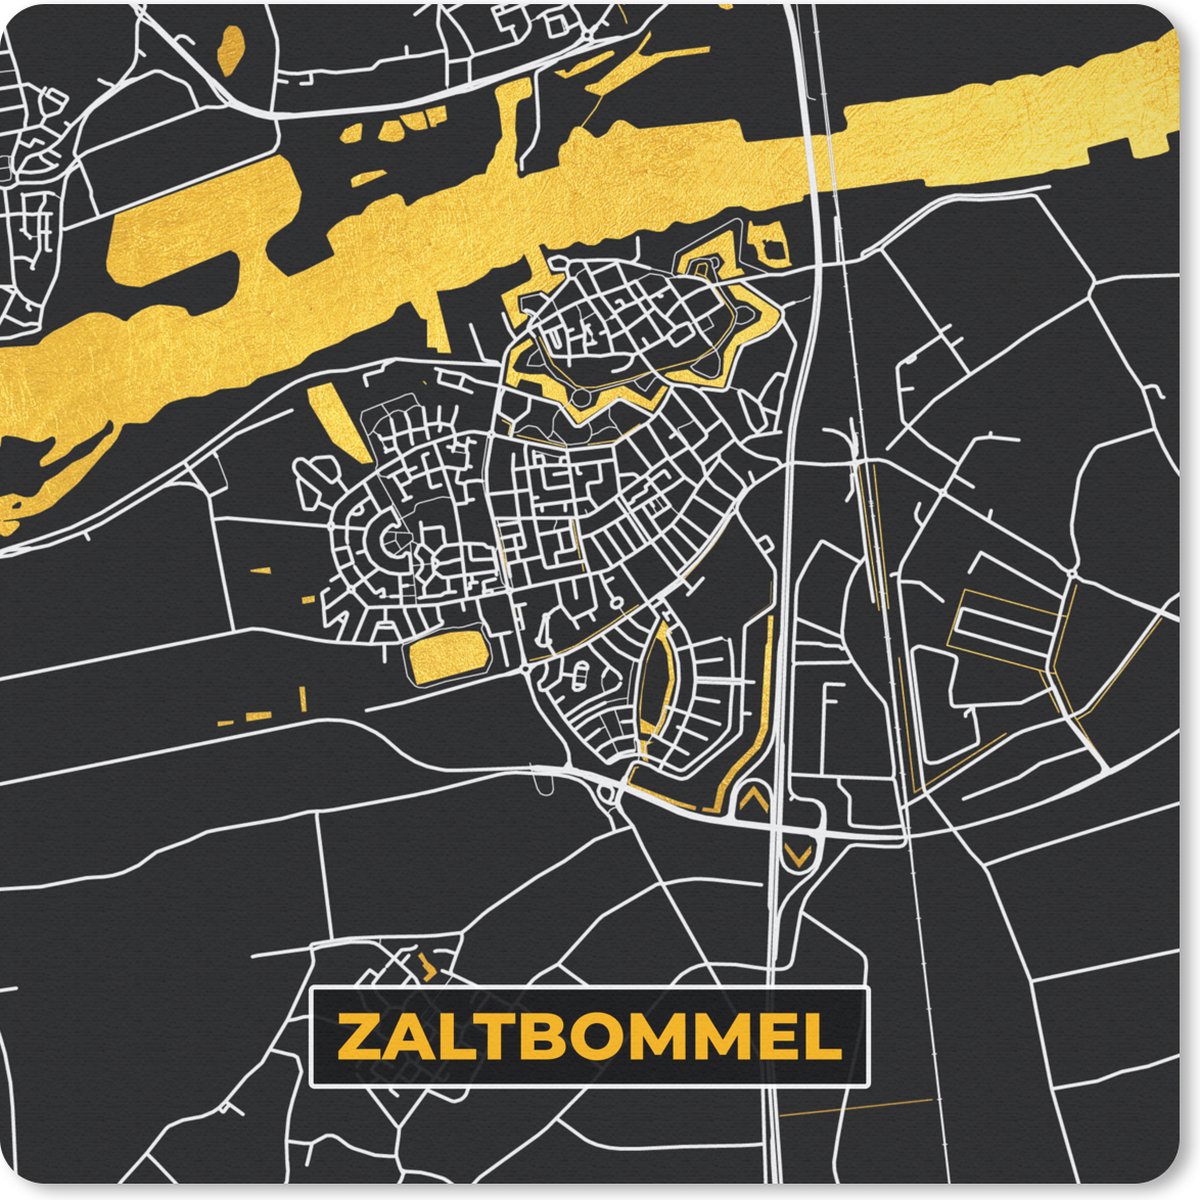 Muismat - Mousepad - Plattegrond - Black en gold - Zaltbommel - Kaart - Stadskaart - 30x30 cm - Muismatten